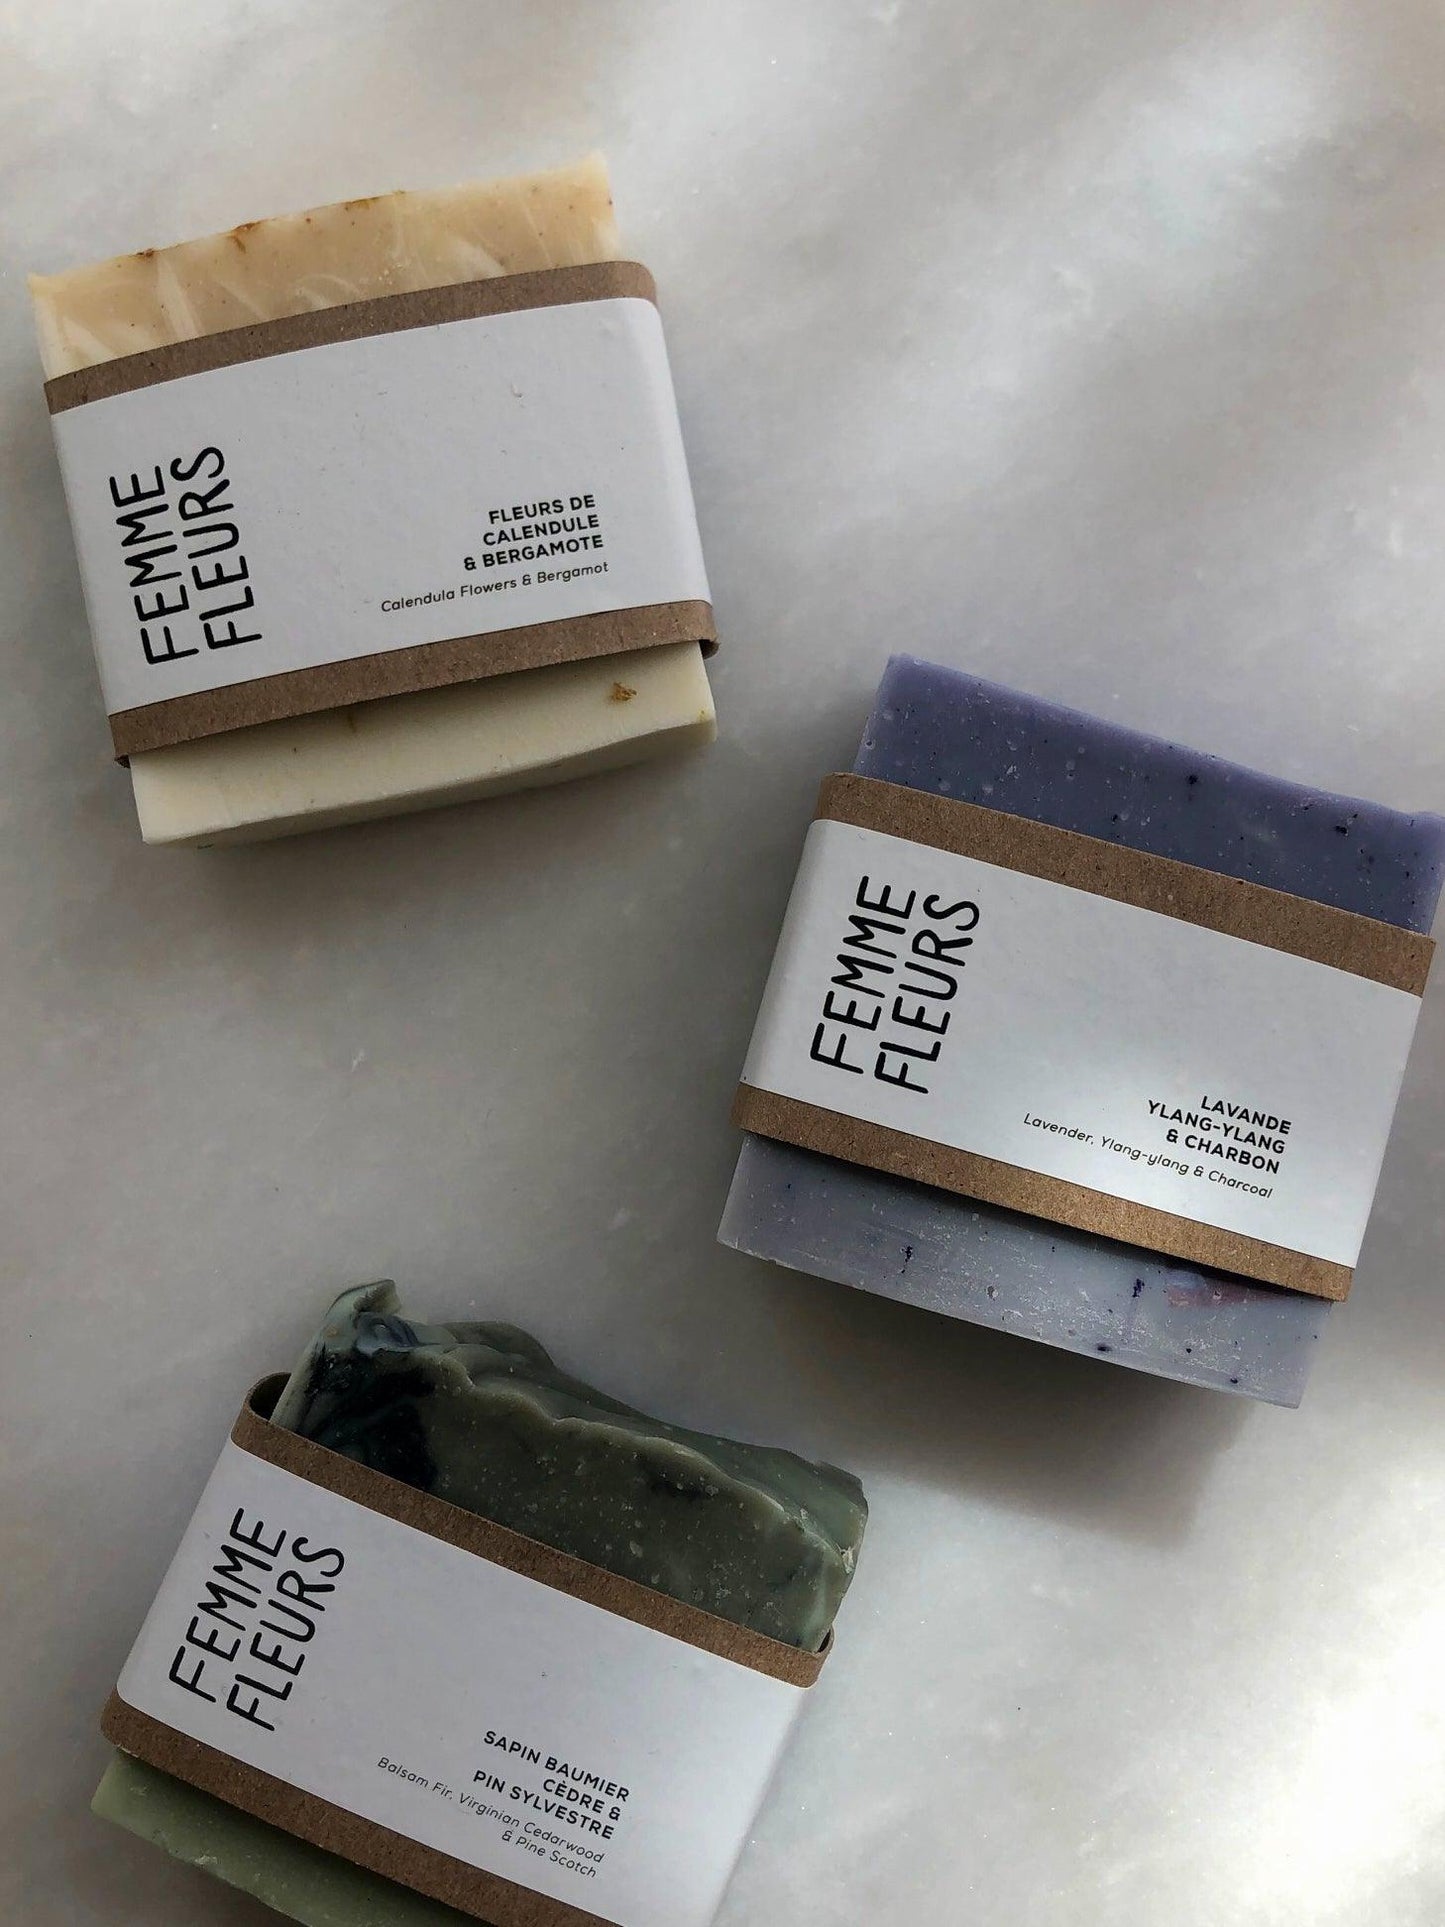 Lavender & ylang-ylang soap - Confetti Mill